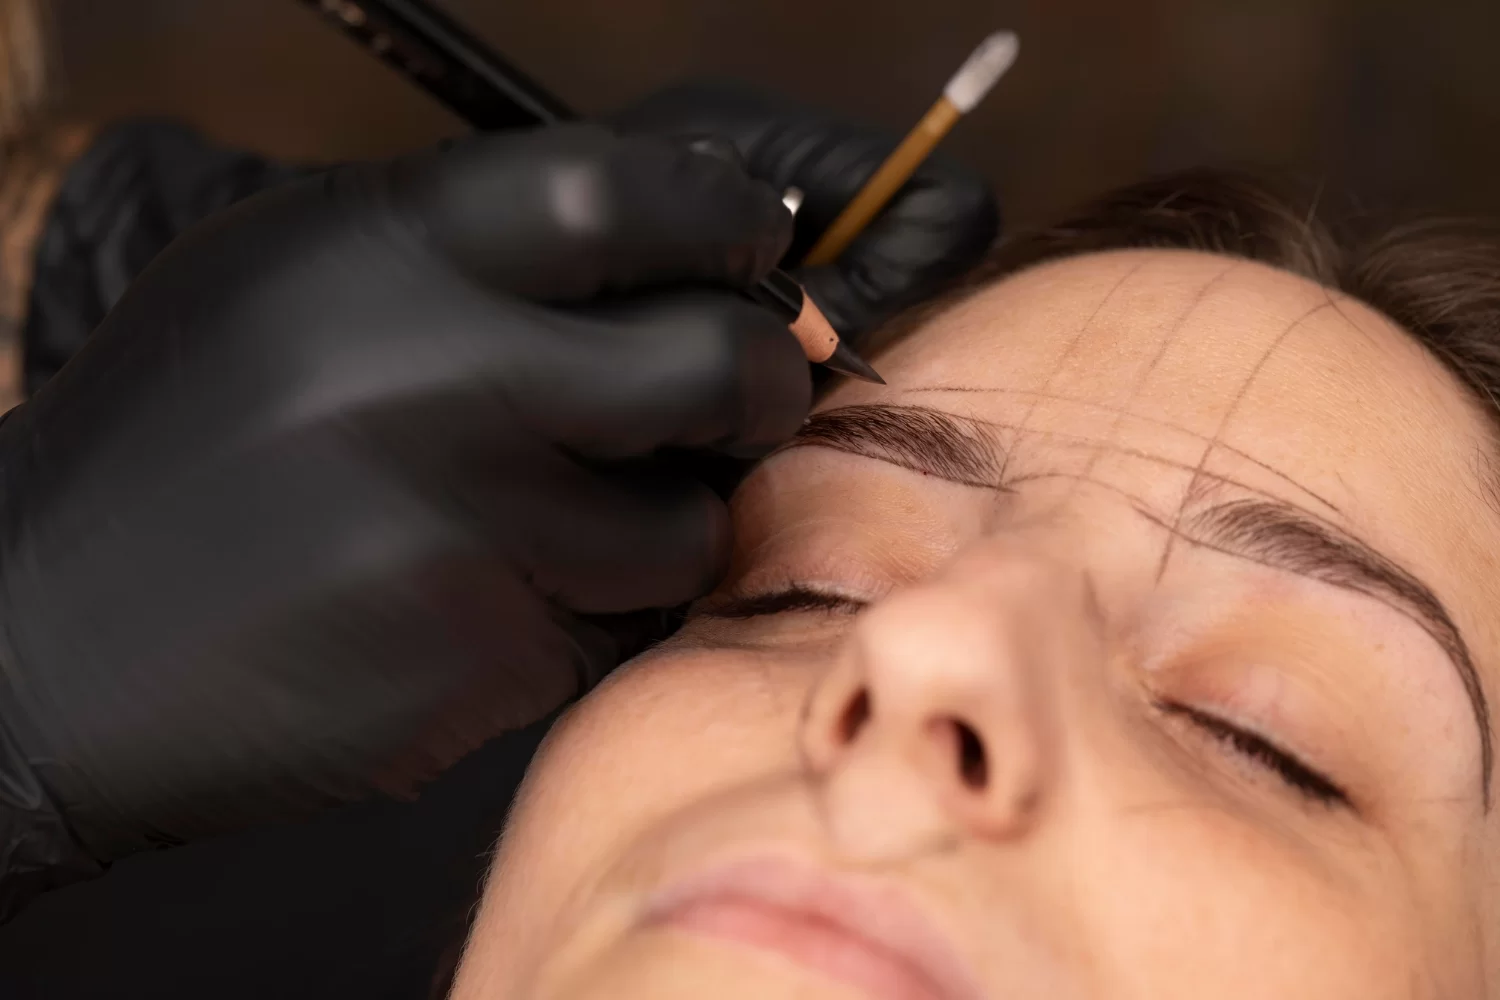 Mulher passando pelo procedimento de marcação na sobrancelha